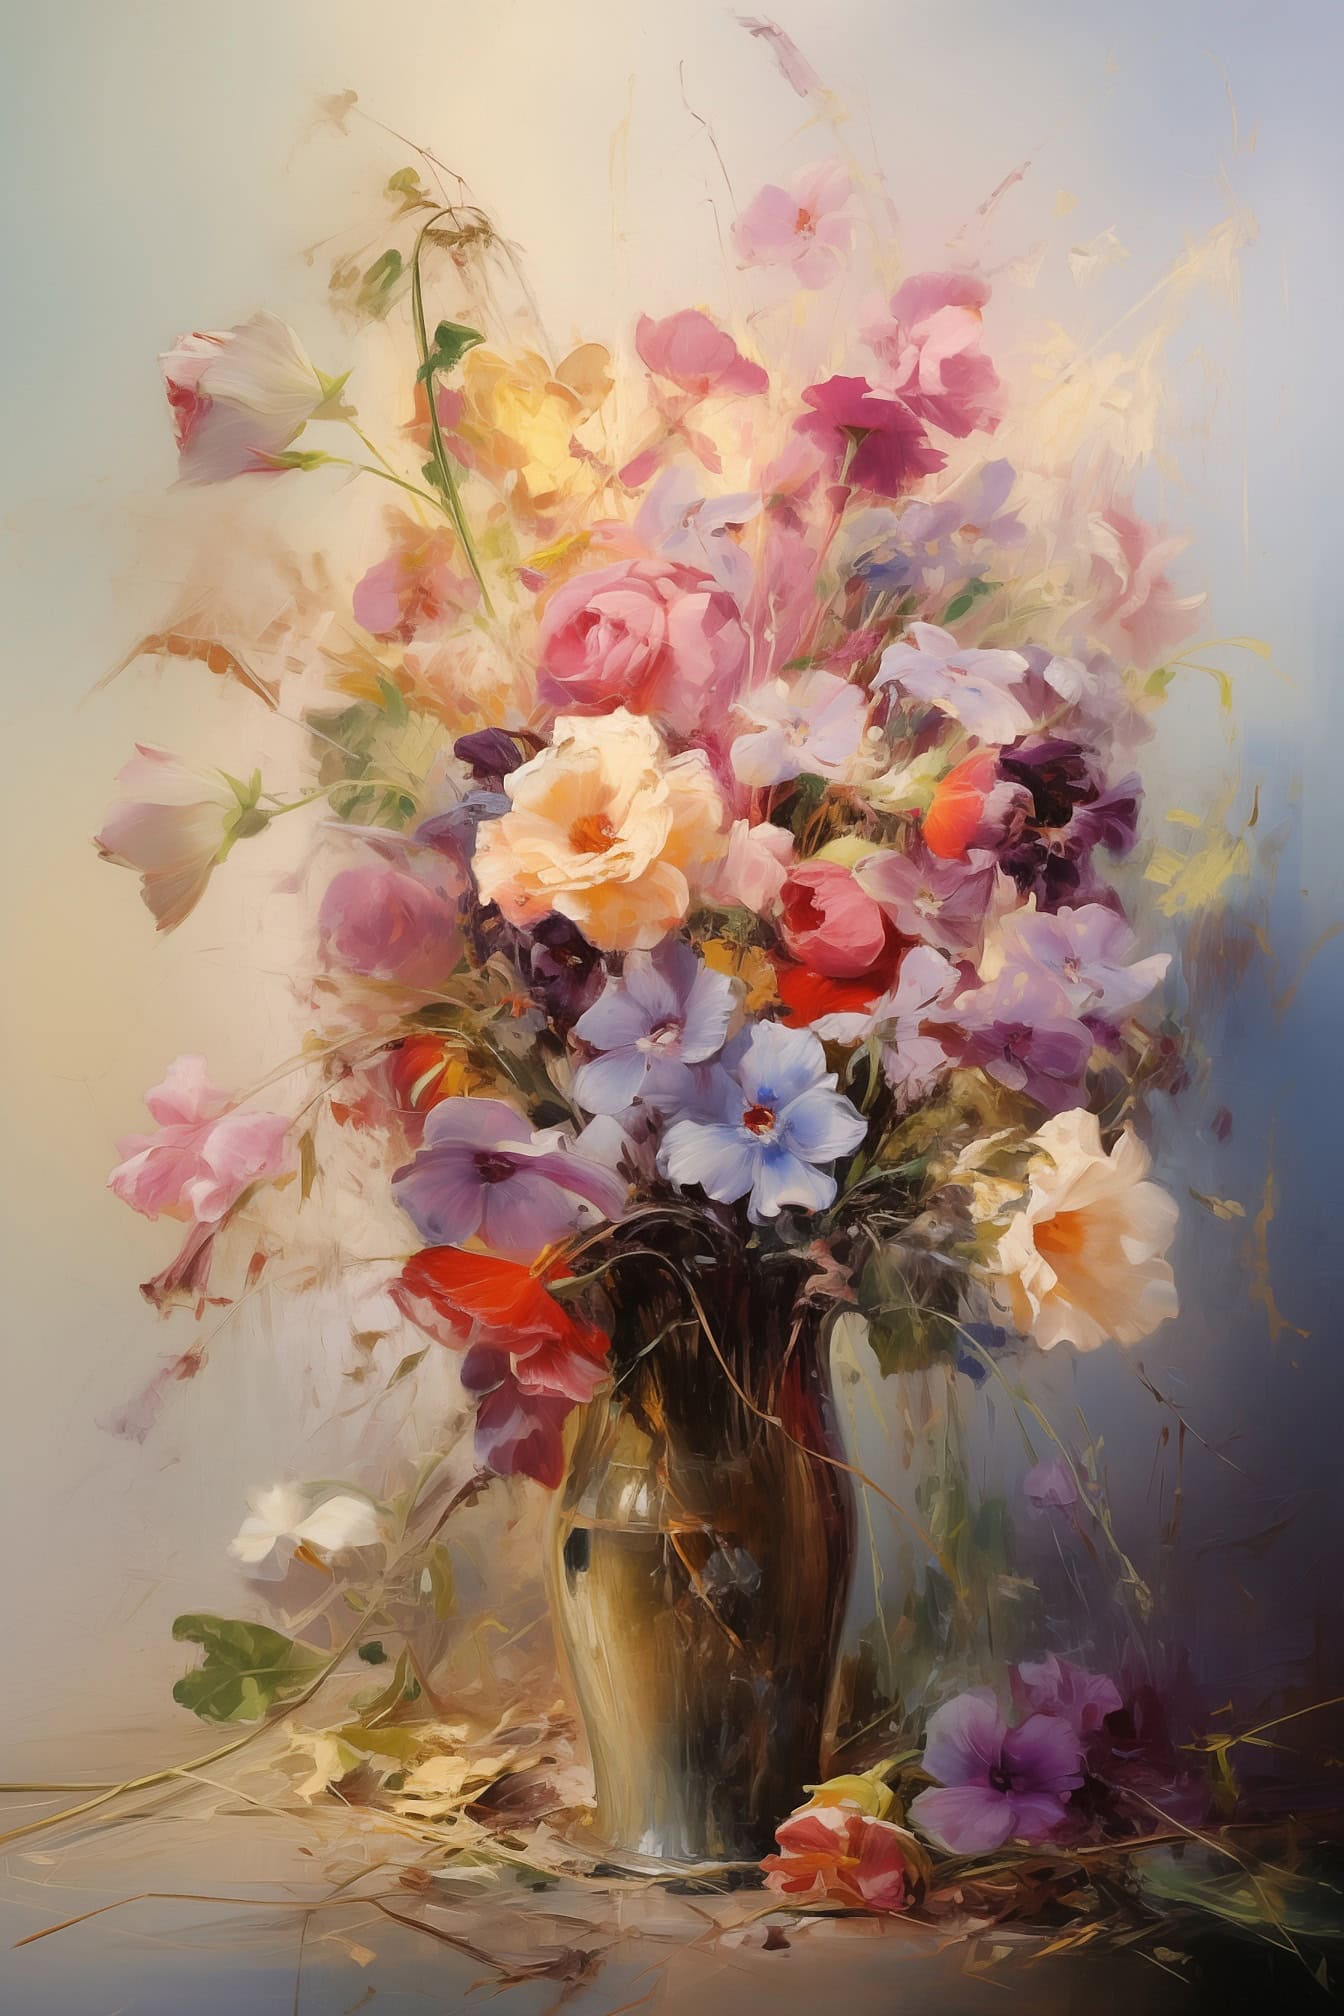 Ölgemälde in Pastellfarben eines Blumenstraußes in einer Vase mit gefallenen Blumen auf dem Boden und mit verschwommenem Hintergrund